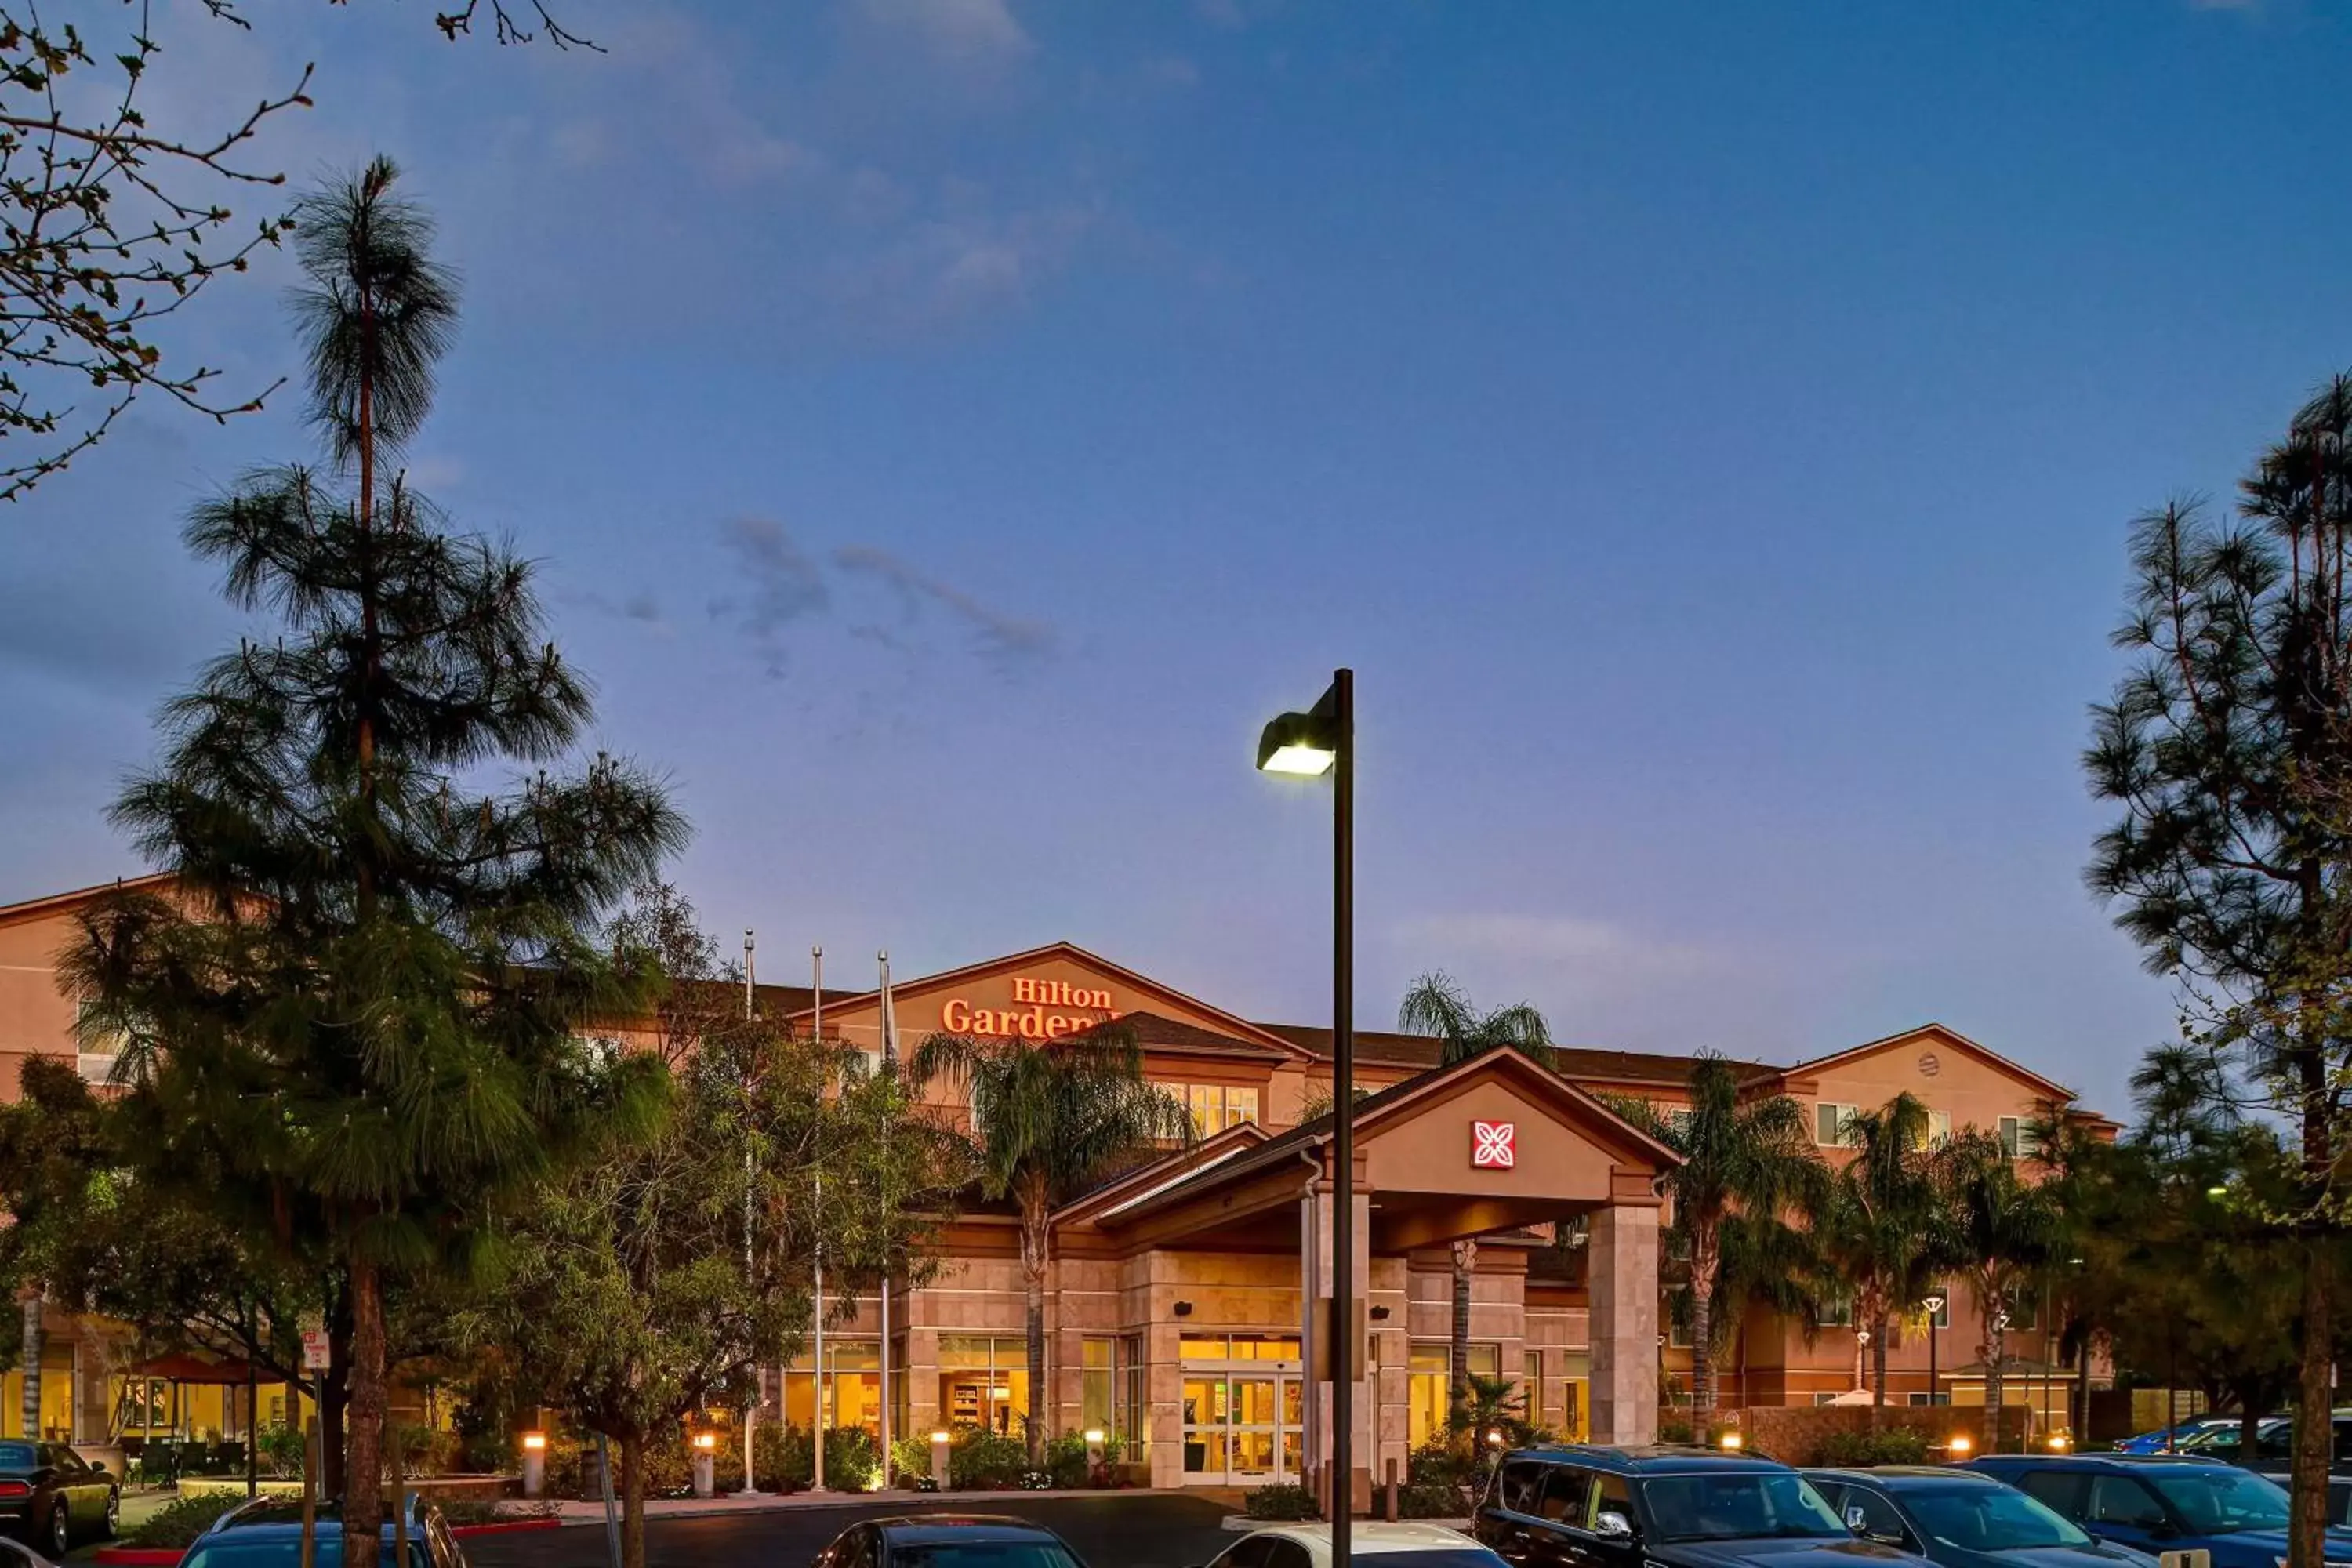 Property Building in Hilton Garden Inn San Bernardino